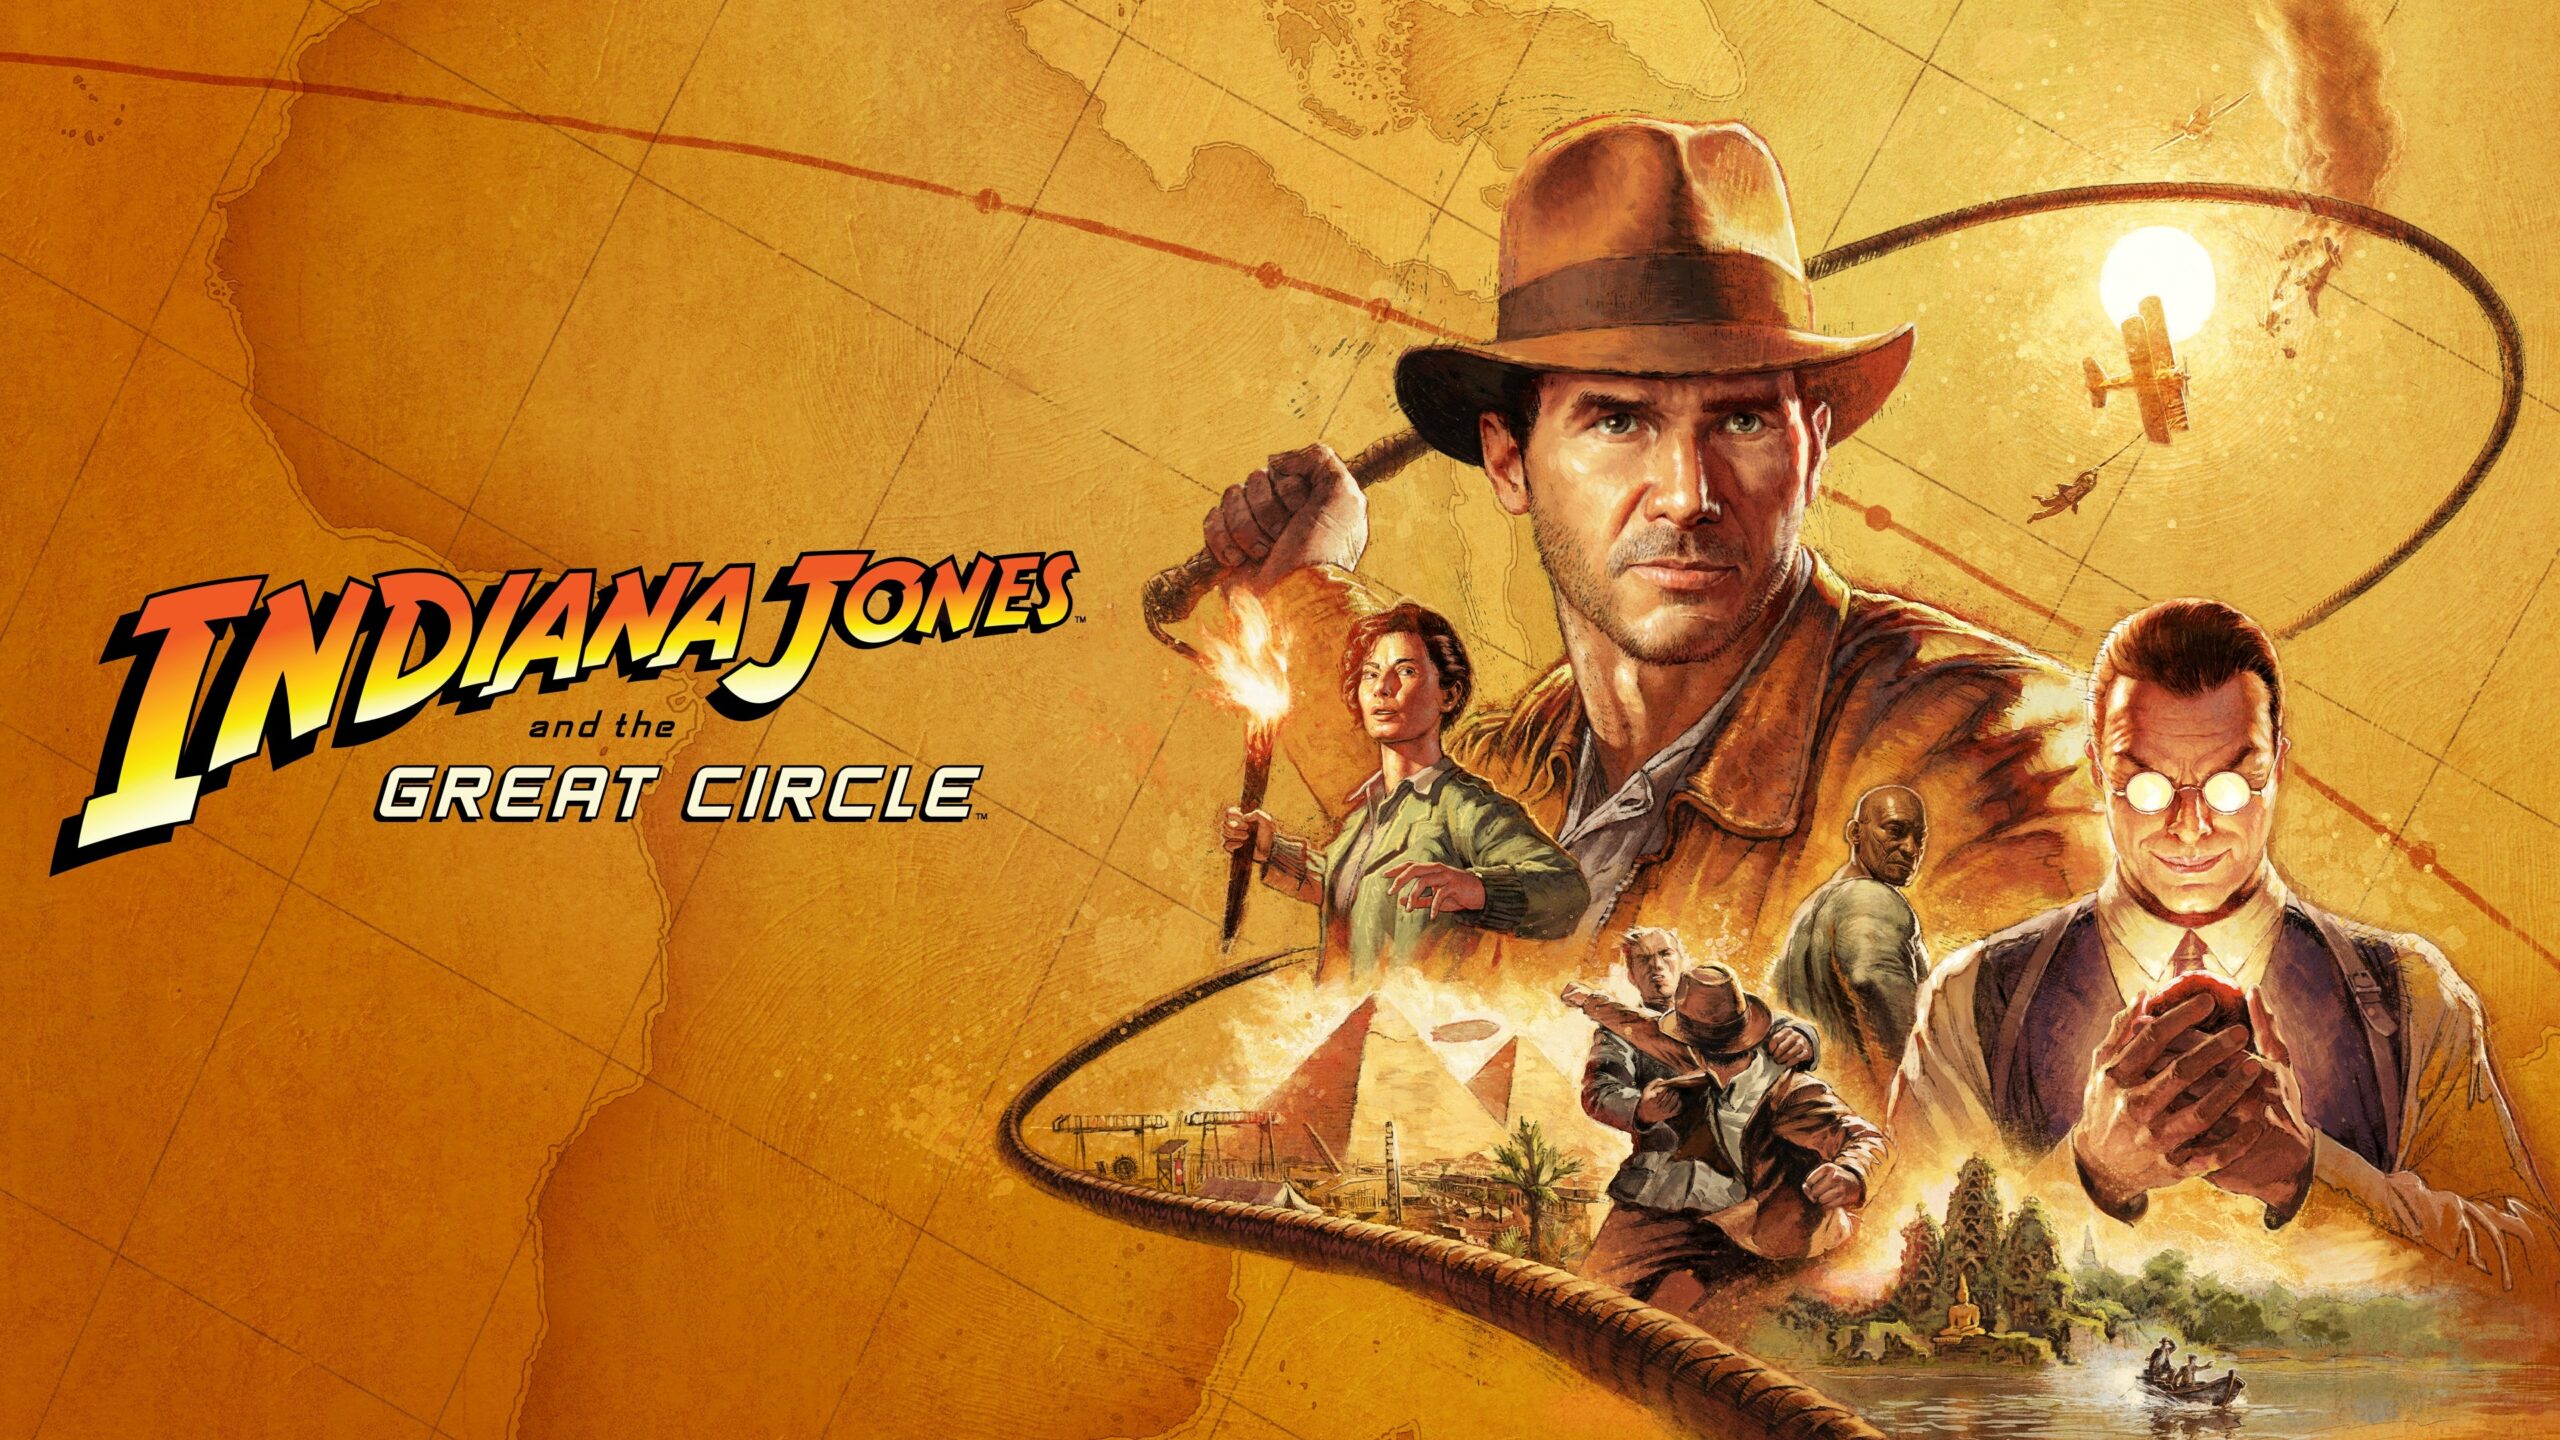 Nuovi trailer di Tekken 8, stagione 3 di Exoprimal ora disponibile, rivelati Indiana Jones e il Grande Cerchio, giochi verificati e altro ancora – TouchArcade